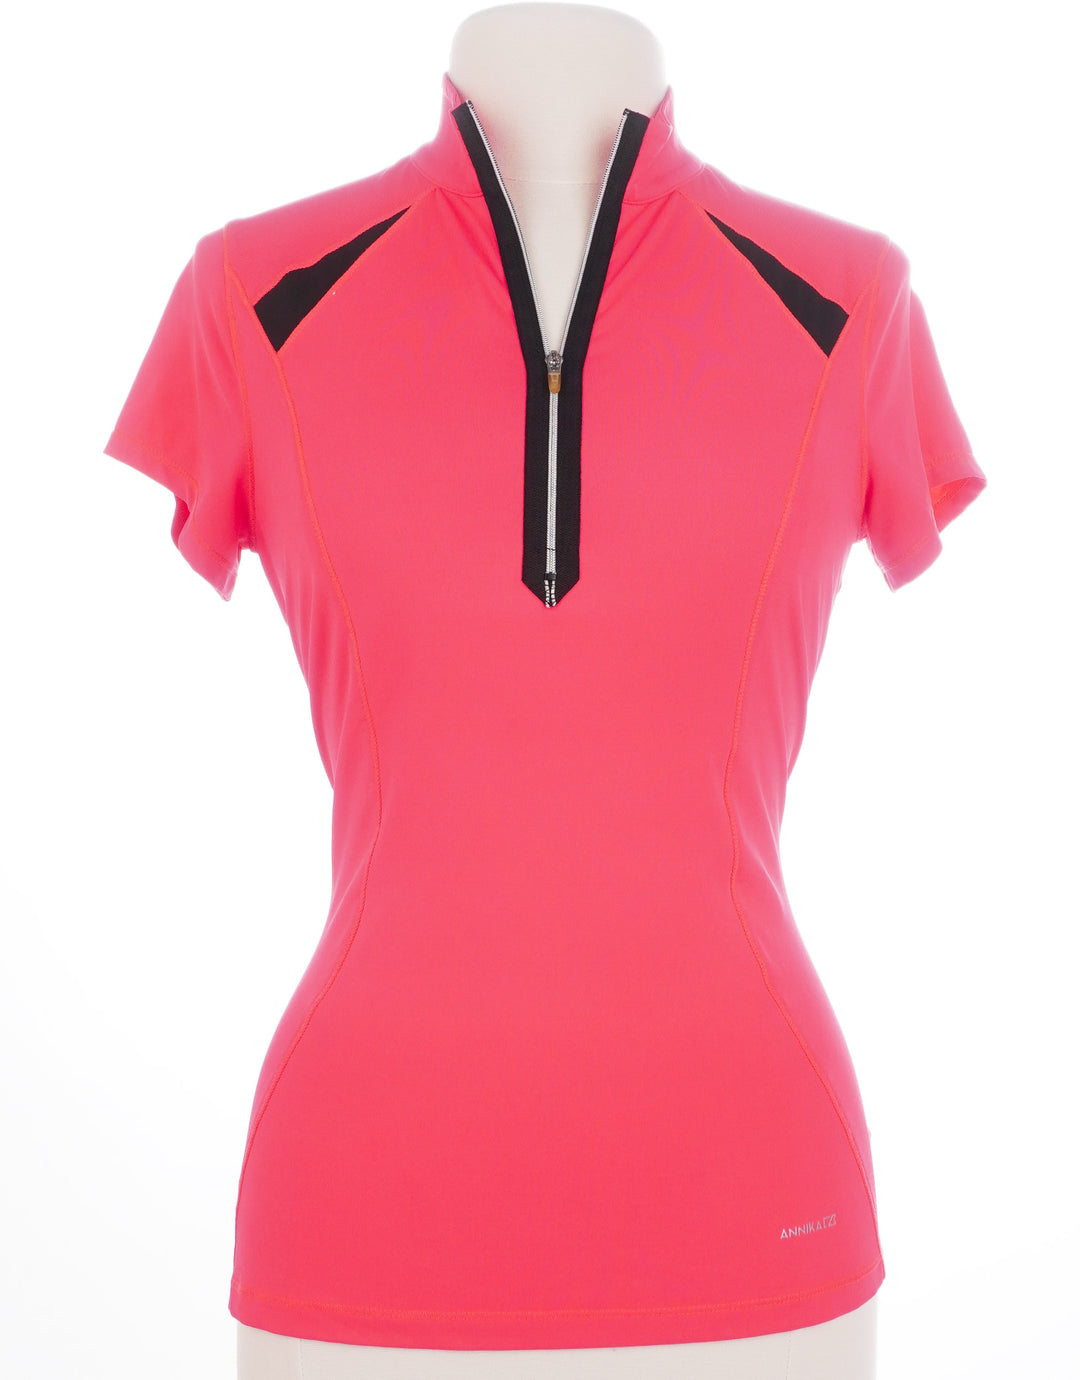 Annika Neon Short Sleeve - Pink - Size X-Small - Skorzie